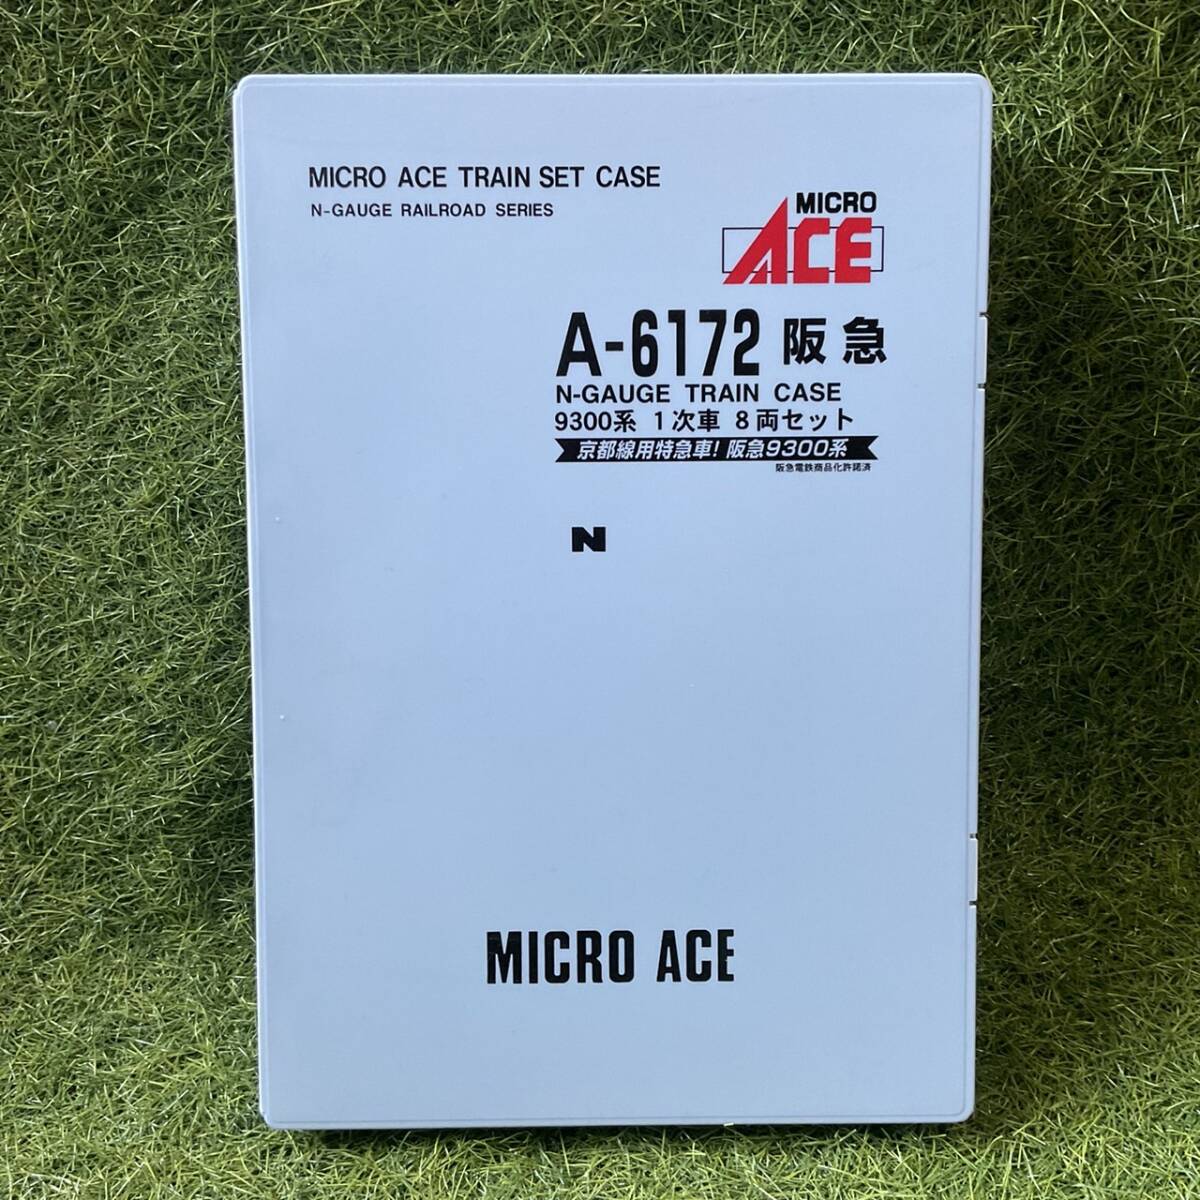  без пробега MICRO ACE микро Ace A-6172. внезапный 9300 серия 1 следующий машина 8 обе комплект N gauge ряд машина железная дорога модель электропоезд 